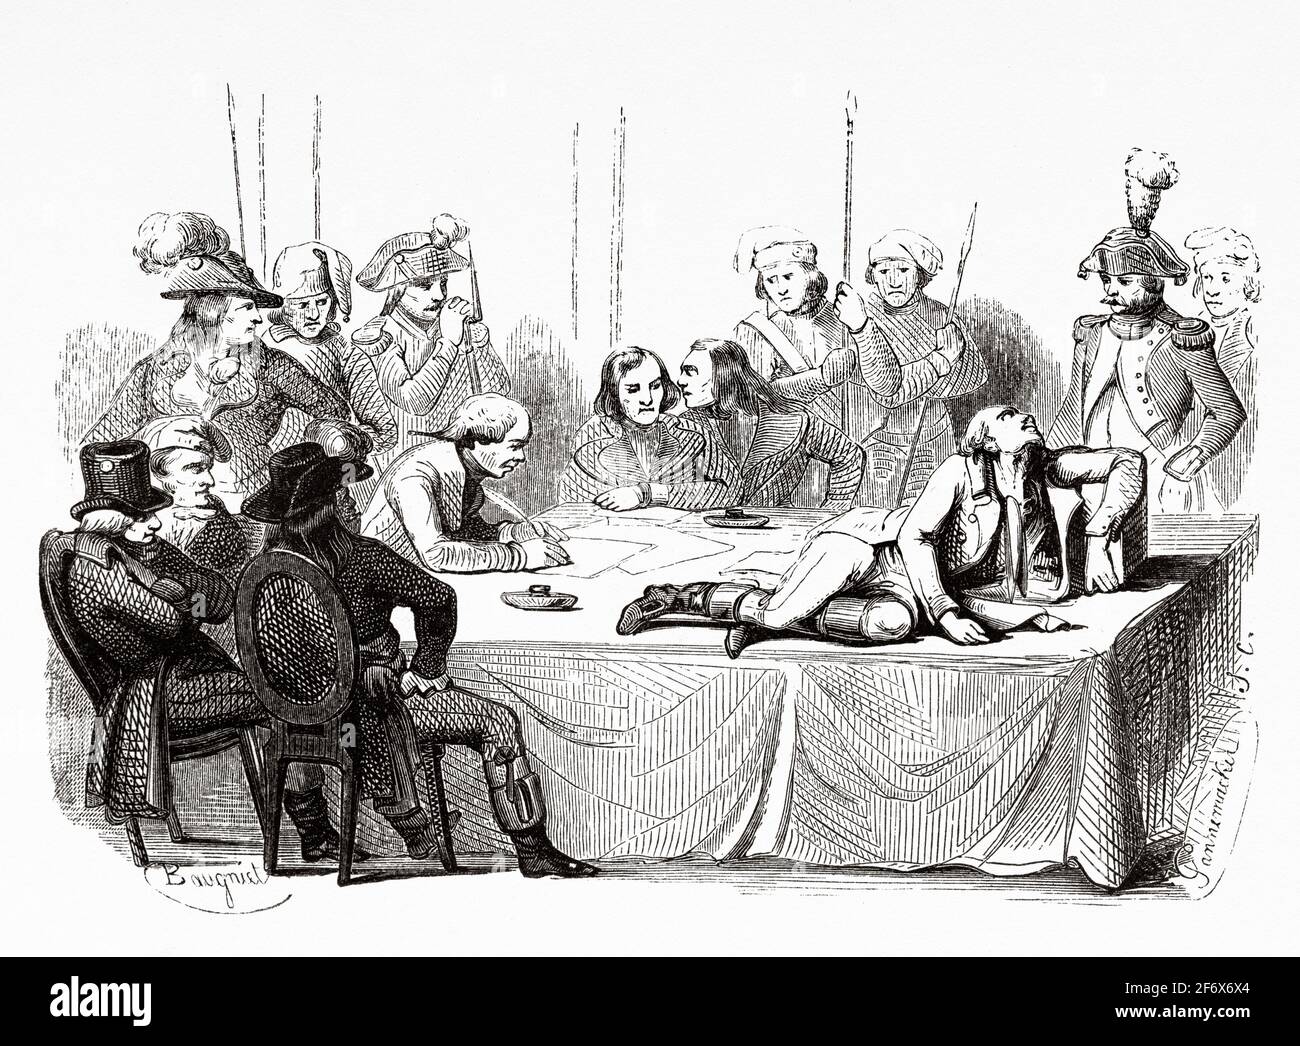 Robespierre se encuentra herido en el Comité de salud pública el 28 de julio de 1794. Francia, Revolución Francesa 18th siglo. Antigua ilustración grabada de Histoire de la Revolution Francaise 1845 Foto de stock